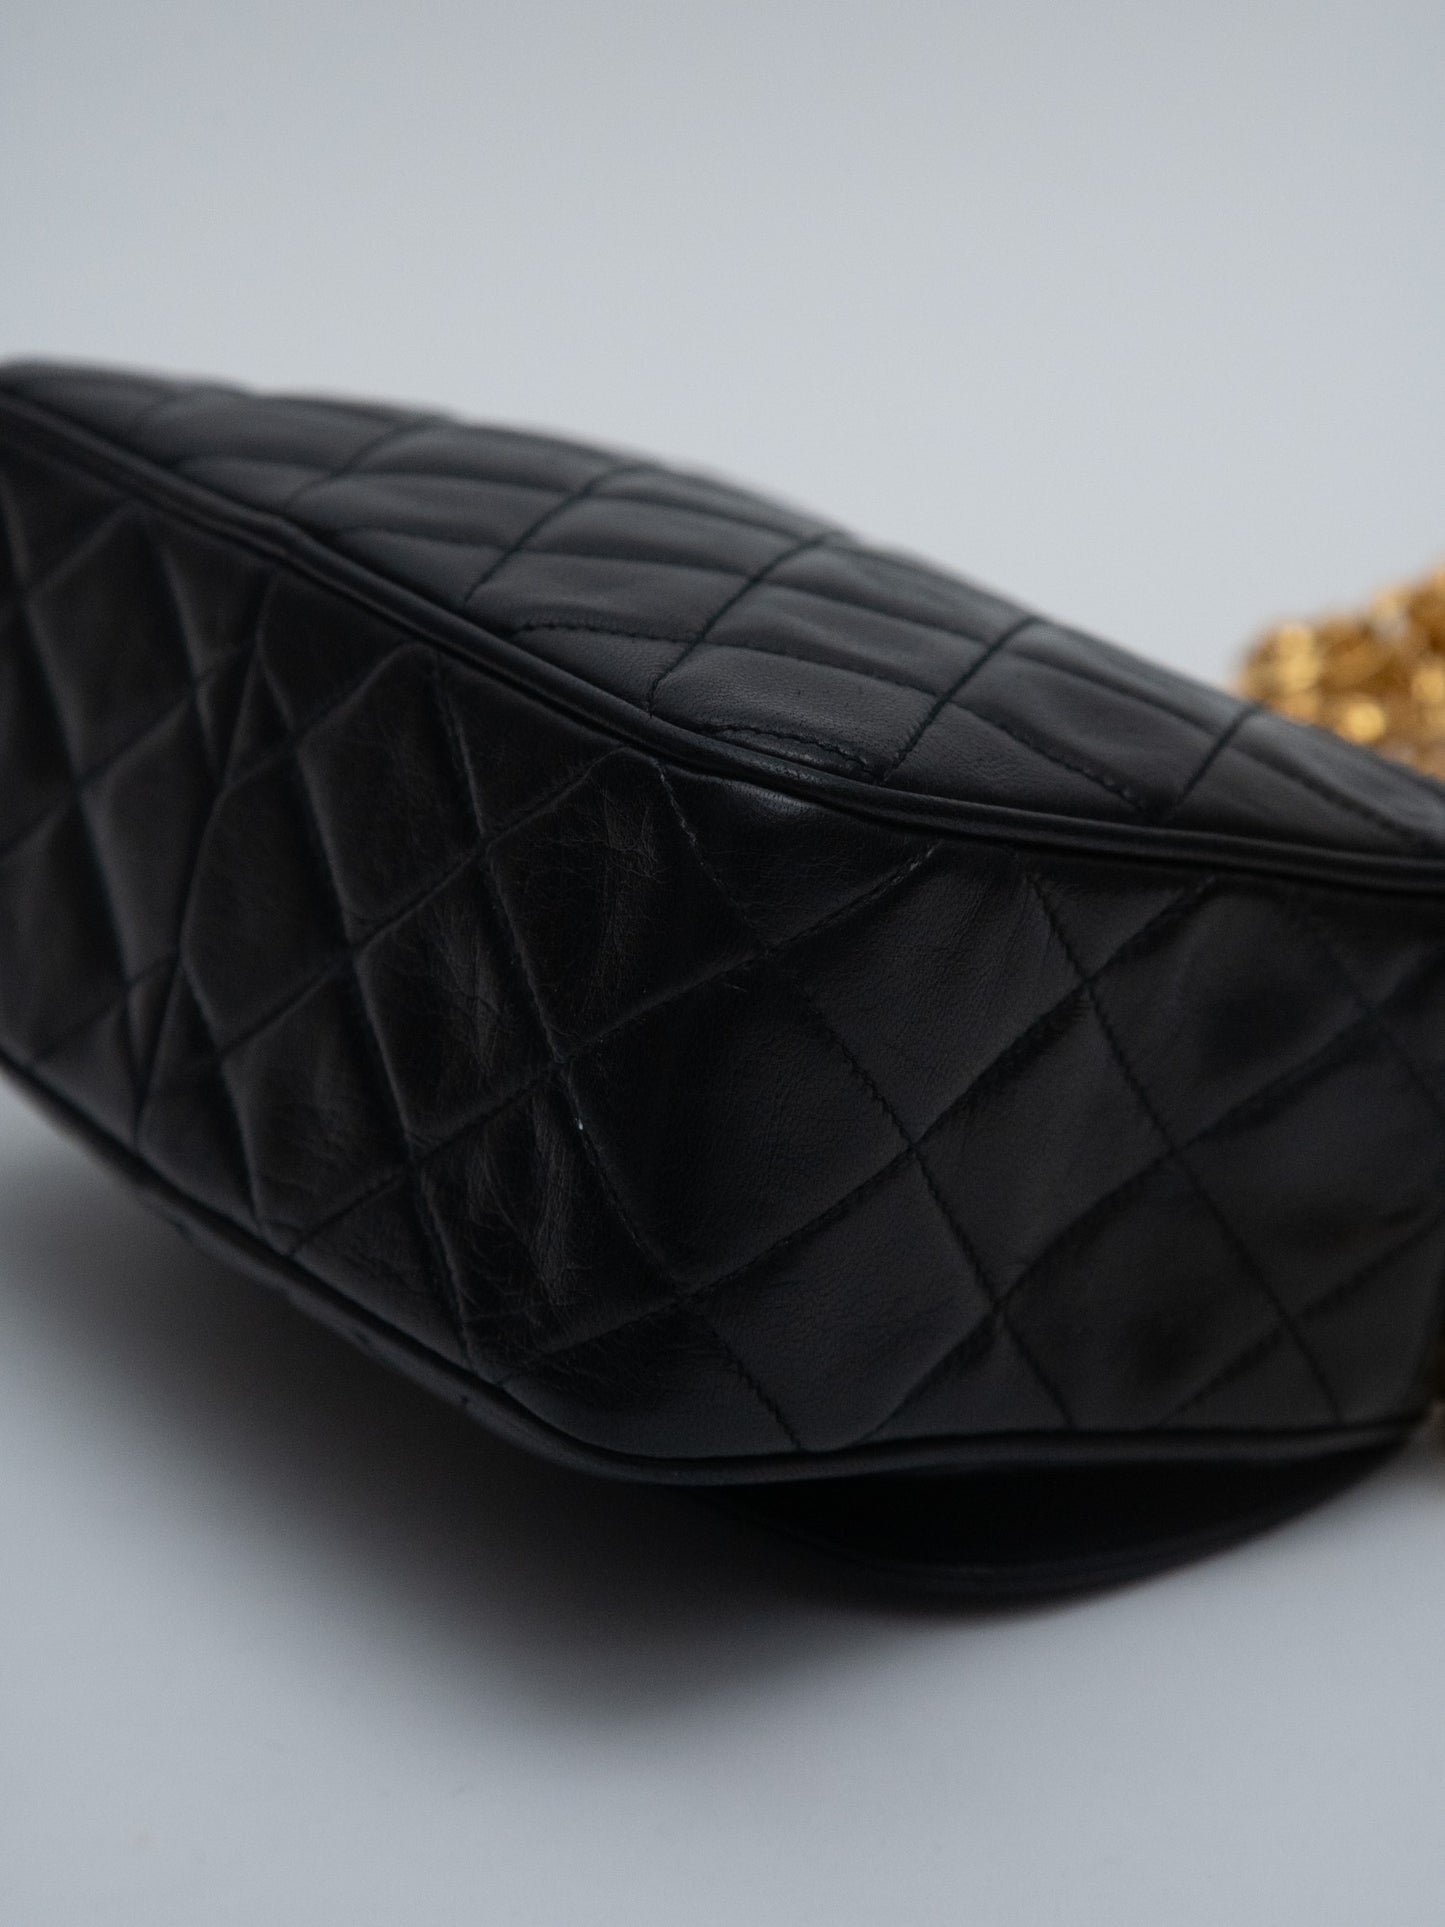 Chanel Matelasse Chain Camera Bag Shoulder Bag Lambskin Black Gold Hardware